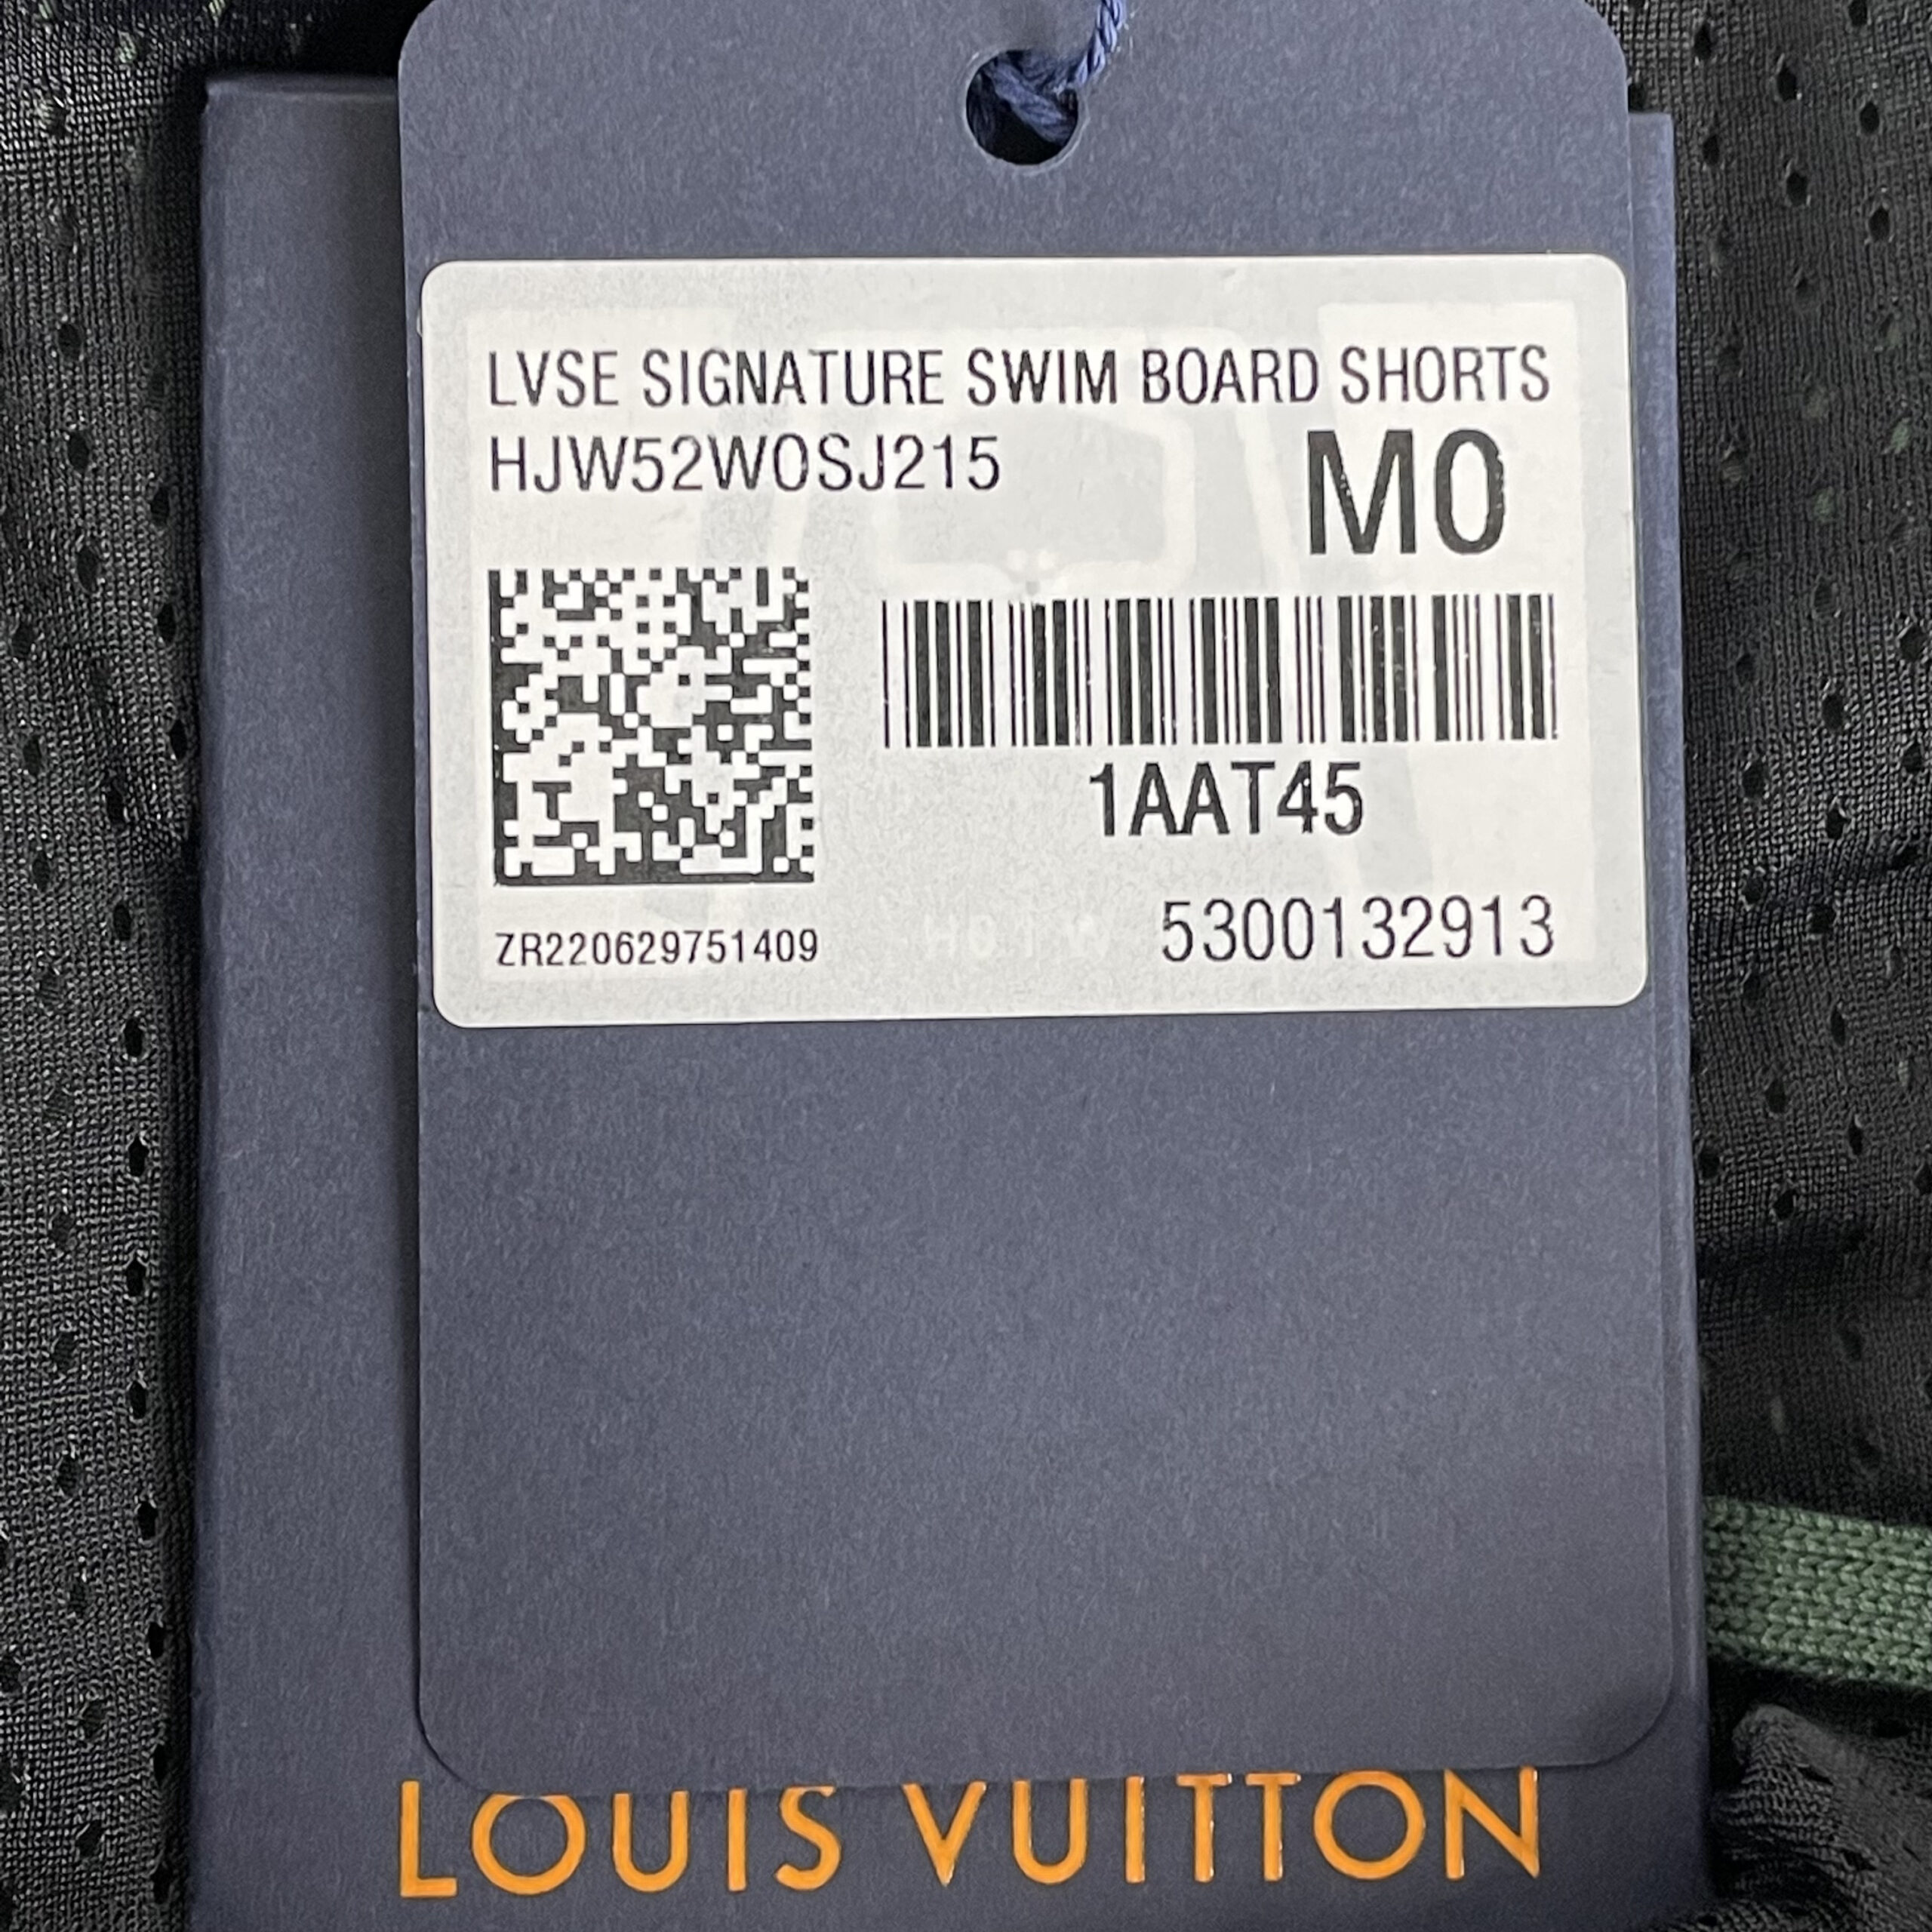 LOUIS VUITTON LVSE Signature Swim Board Shorts - DYGLOUIS